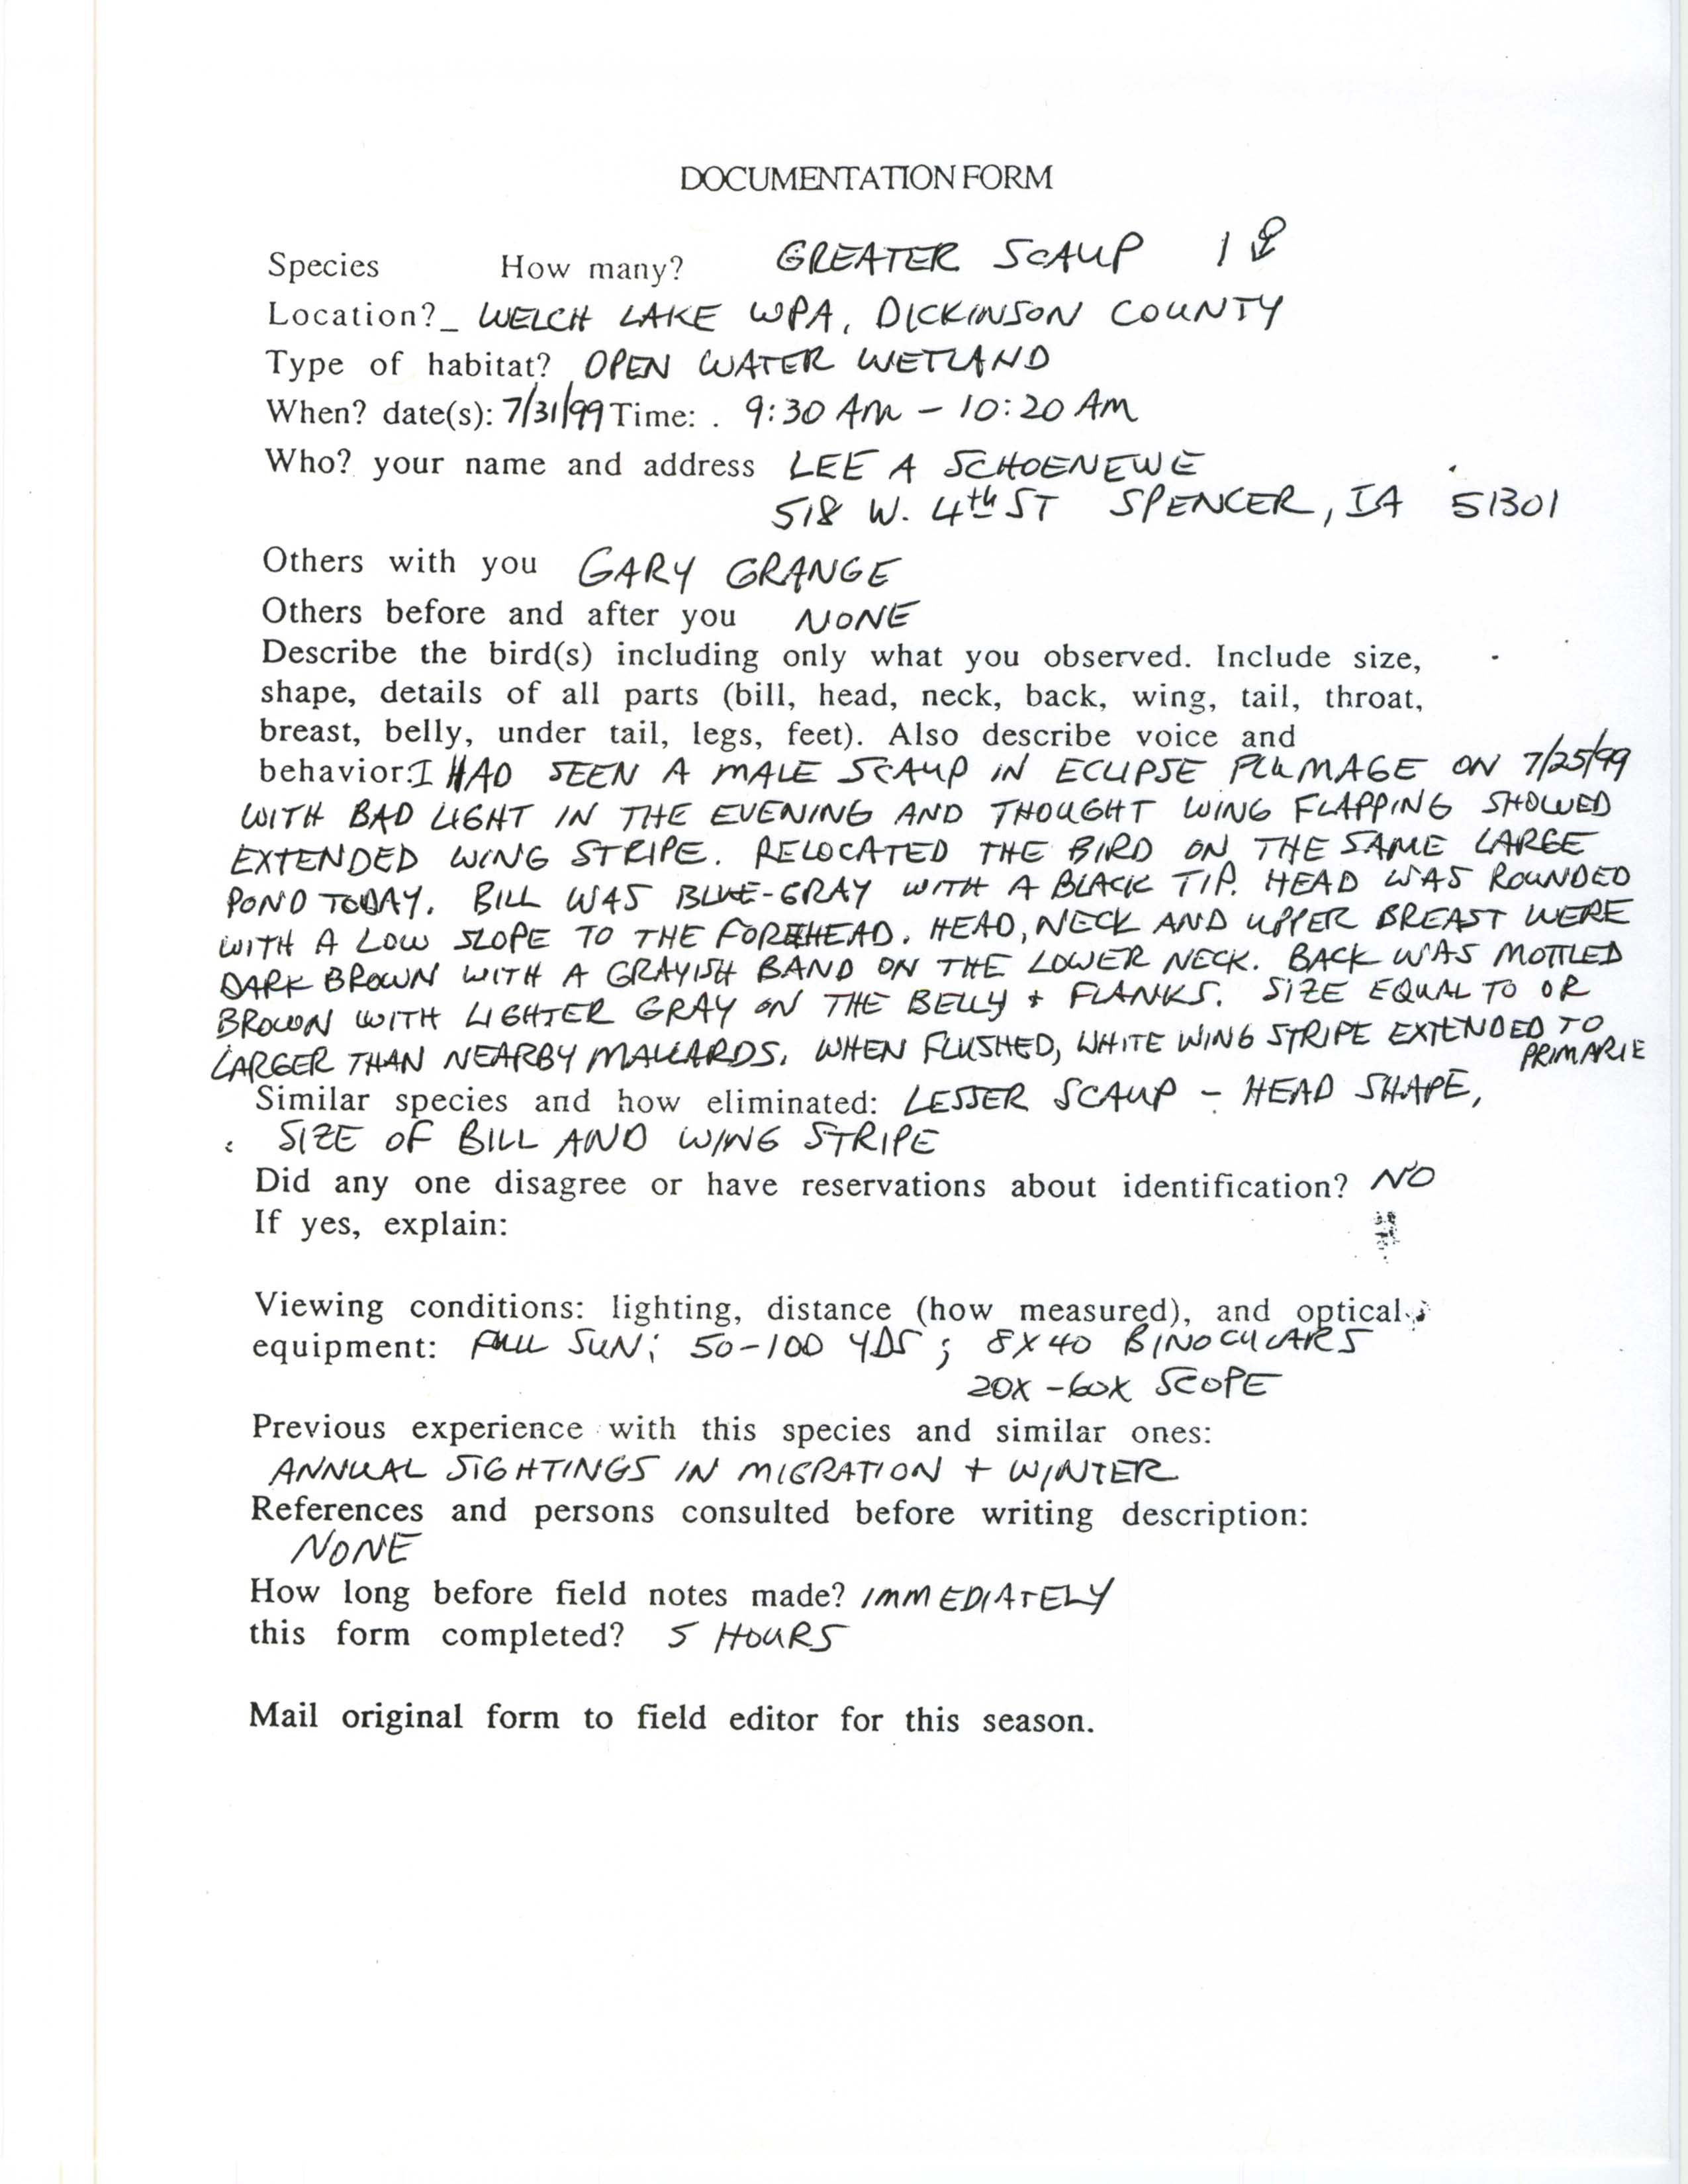 Documentation form, Greater Scaup, July 31, 1999, Lee Schoenewe